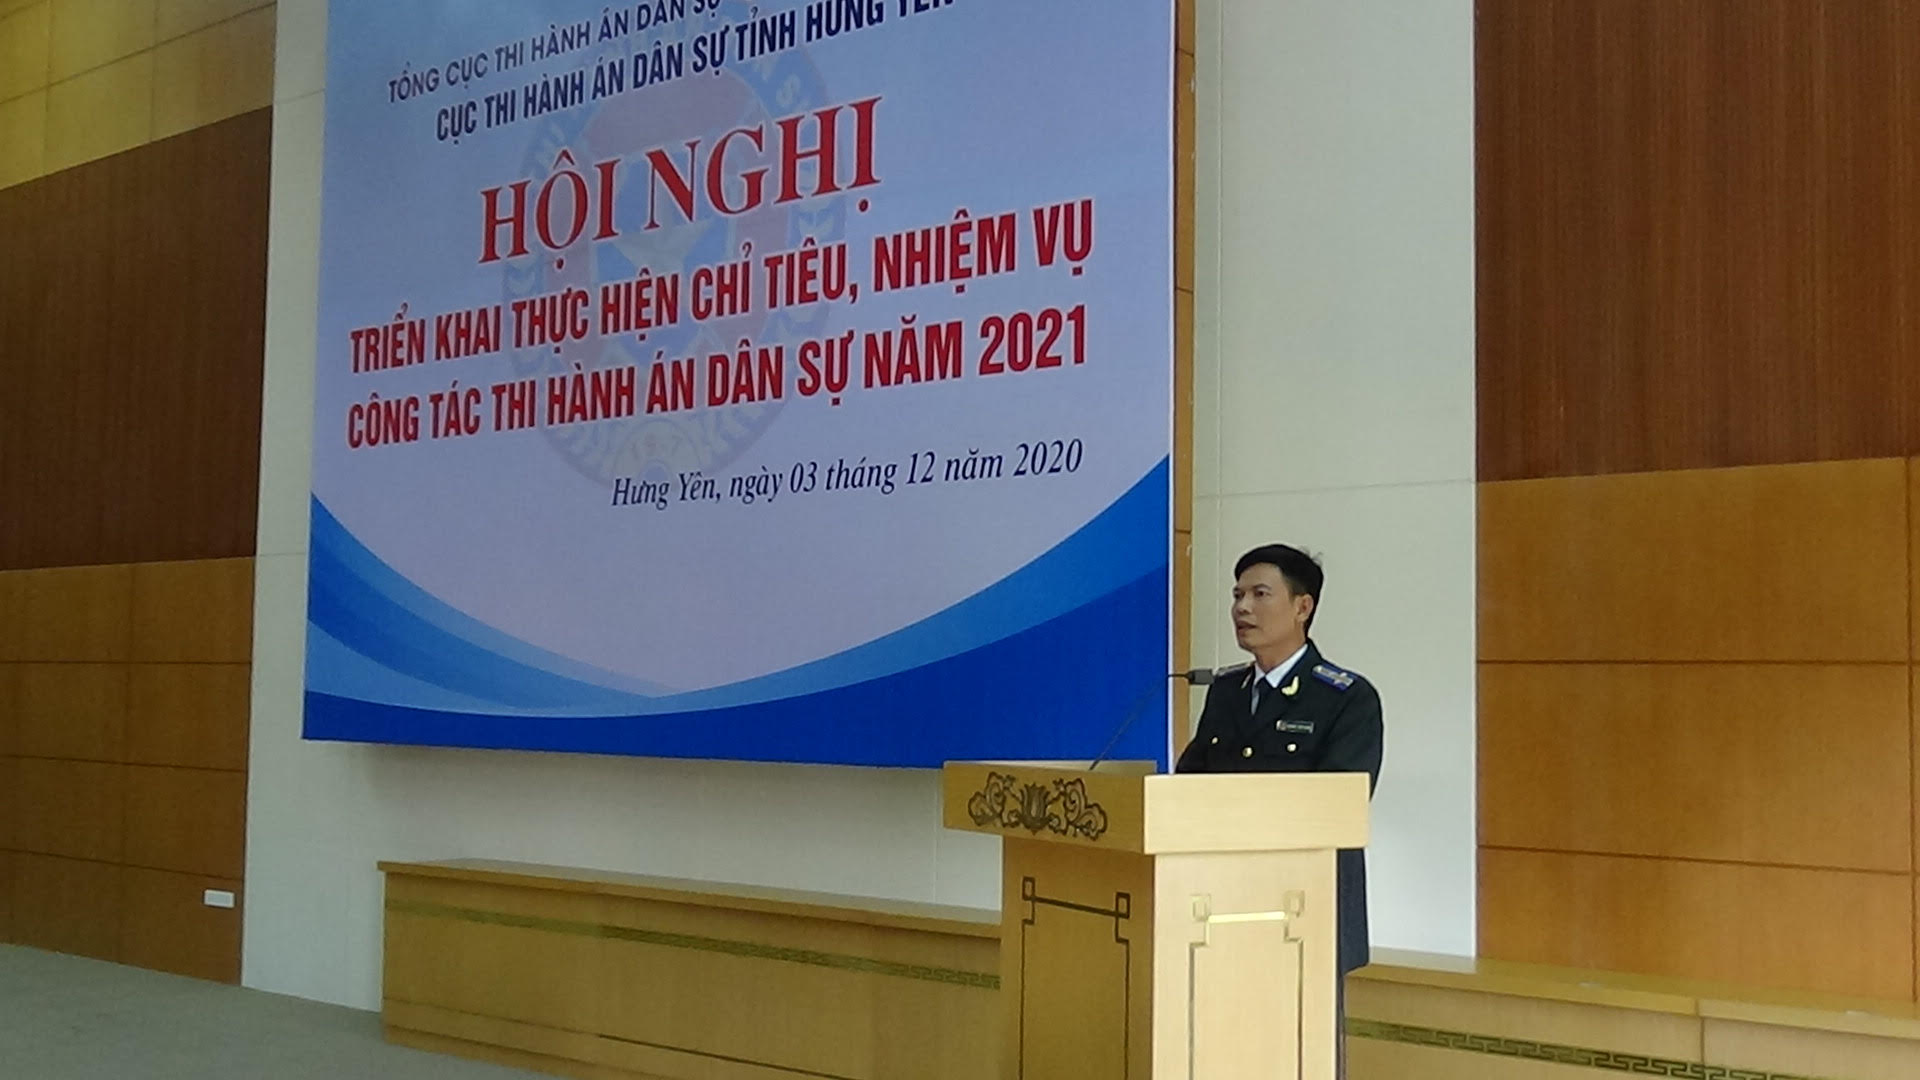 Cục Thi hành án dân sự tỉnh Hưng Yên tổ chức Hội nghị triển khai thực hiện chỉ tiêu, nhiệm vụ công tác thi hành án dân sự năm 2021